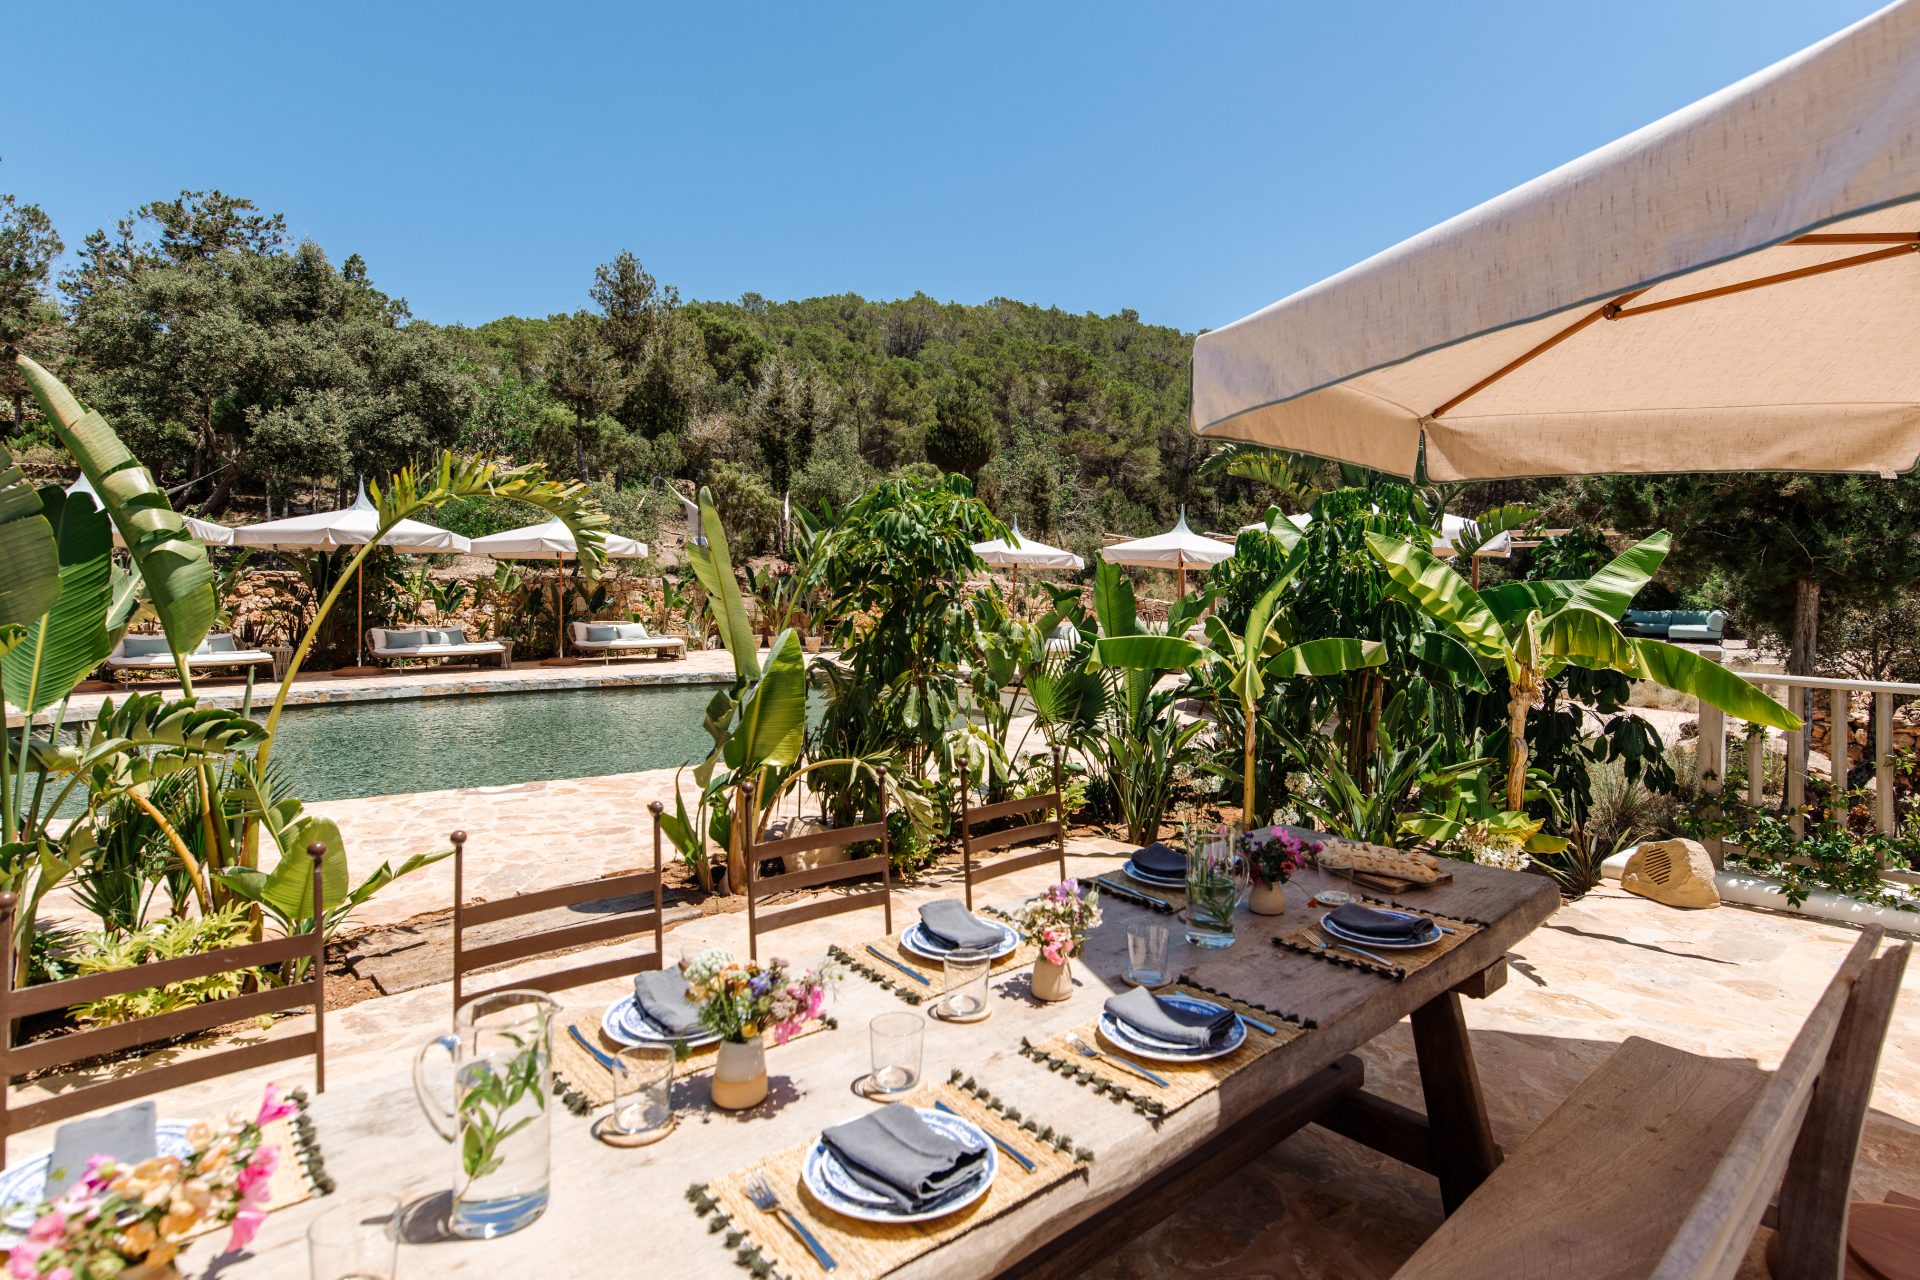 FincaDelica 35 5 x droomvilla’s op Ibiza: Hier slapen de sterren